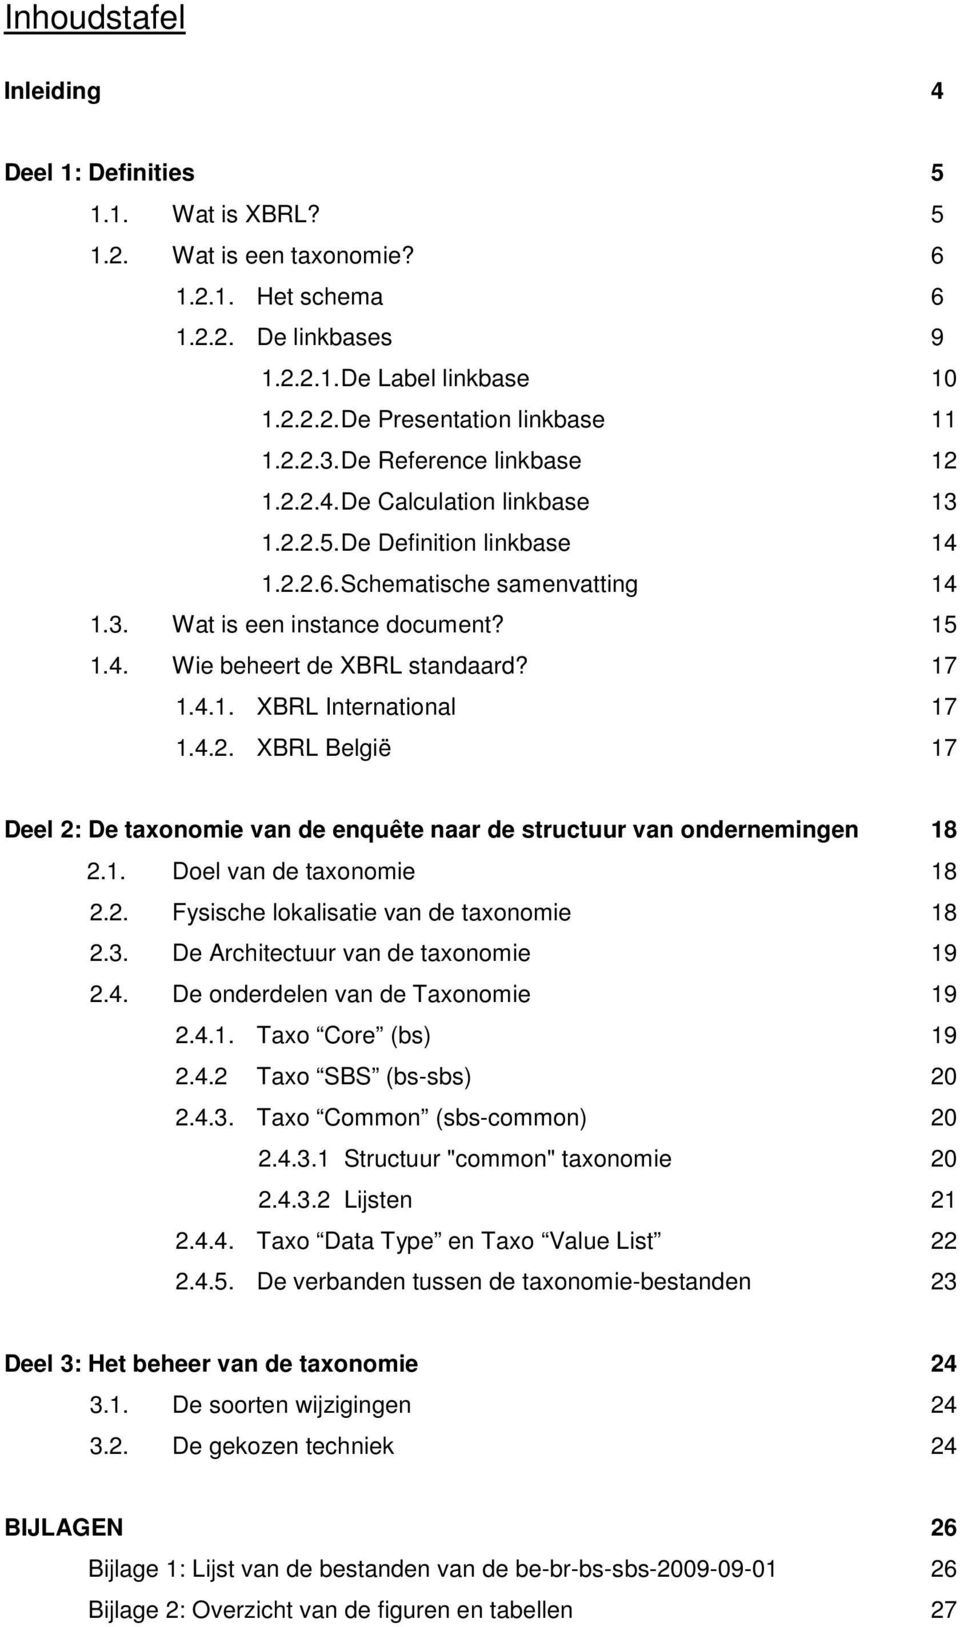 17 1.4.1. XBRL International 17 1.4.2. XBRL België 17 Deel 2: De taxonomie van de enquête naar de structuur van ondernemingen 18 2.1. Doel van de taxonomie 18 2.2. Fysische lokalisatie van de taxonomie 18 2.